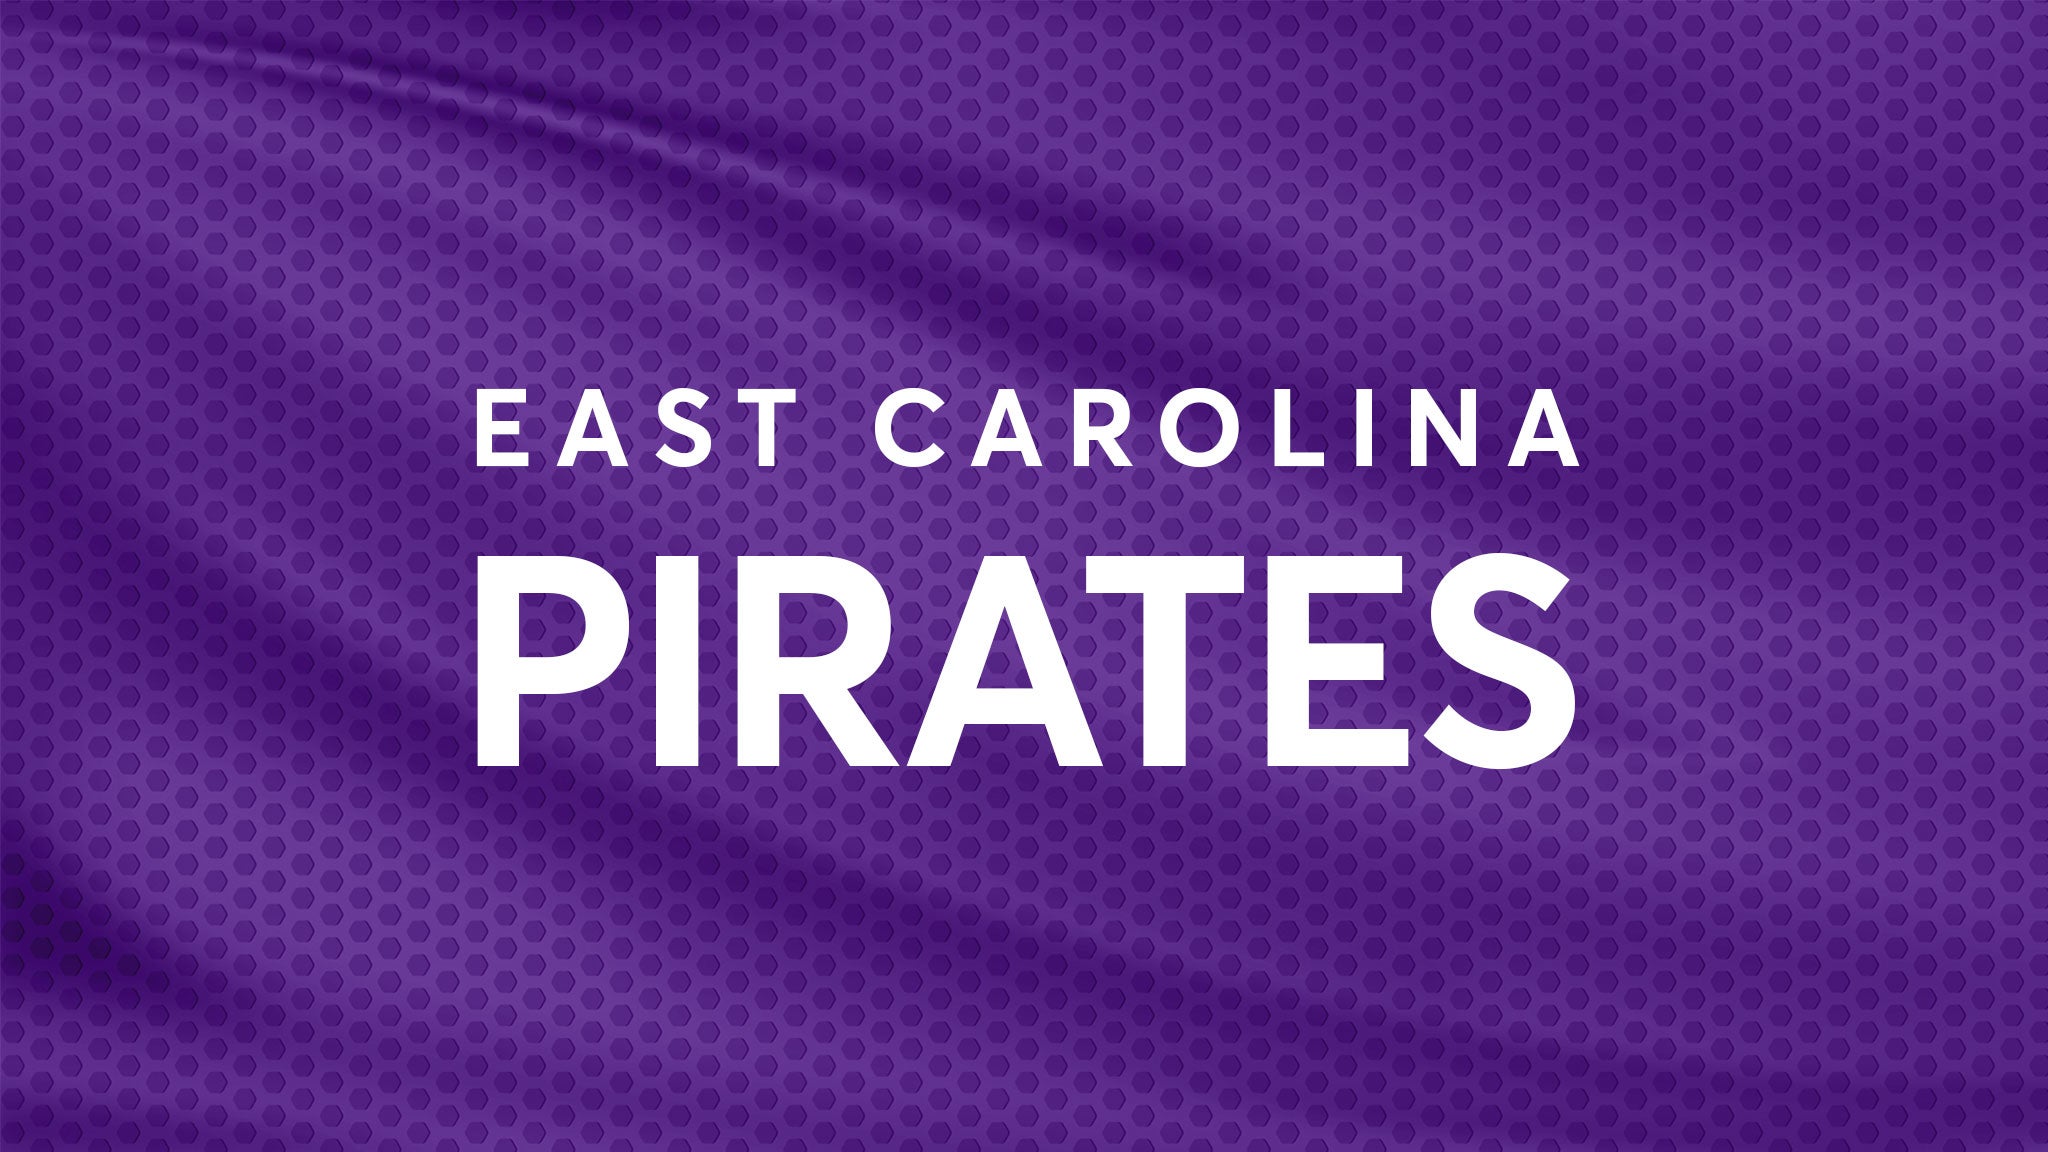 East Carolina Pirates Football vs. Navy Midshipmen Football hero